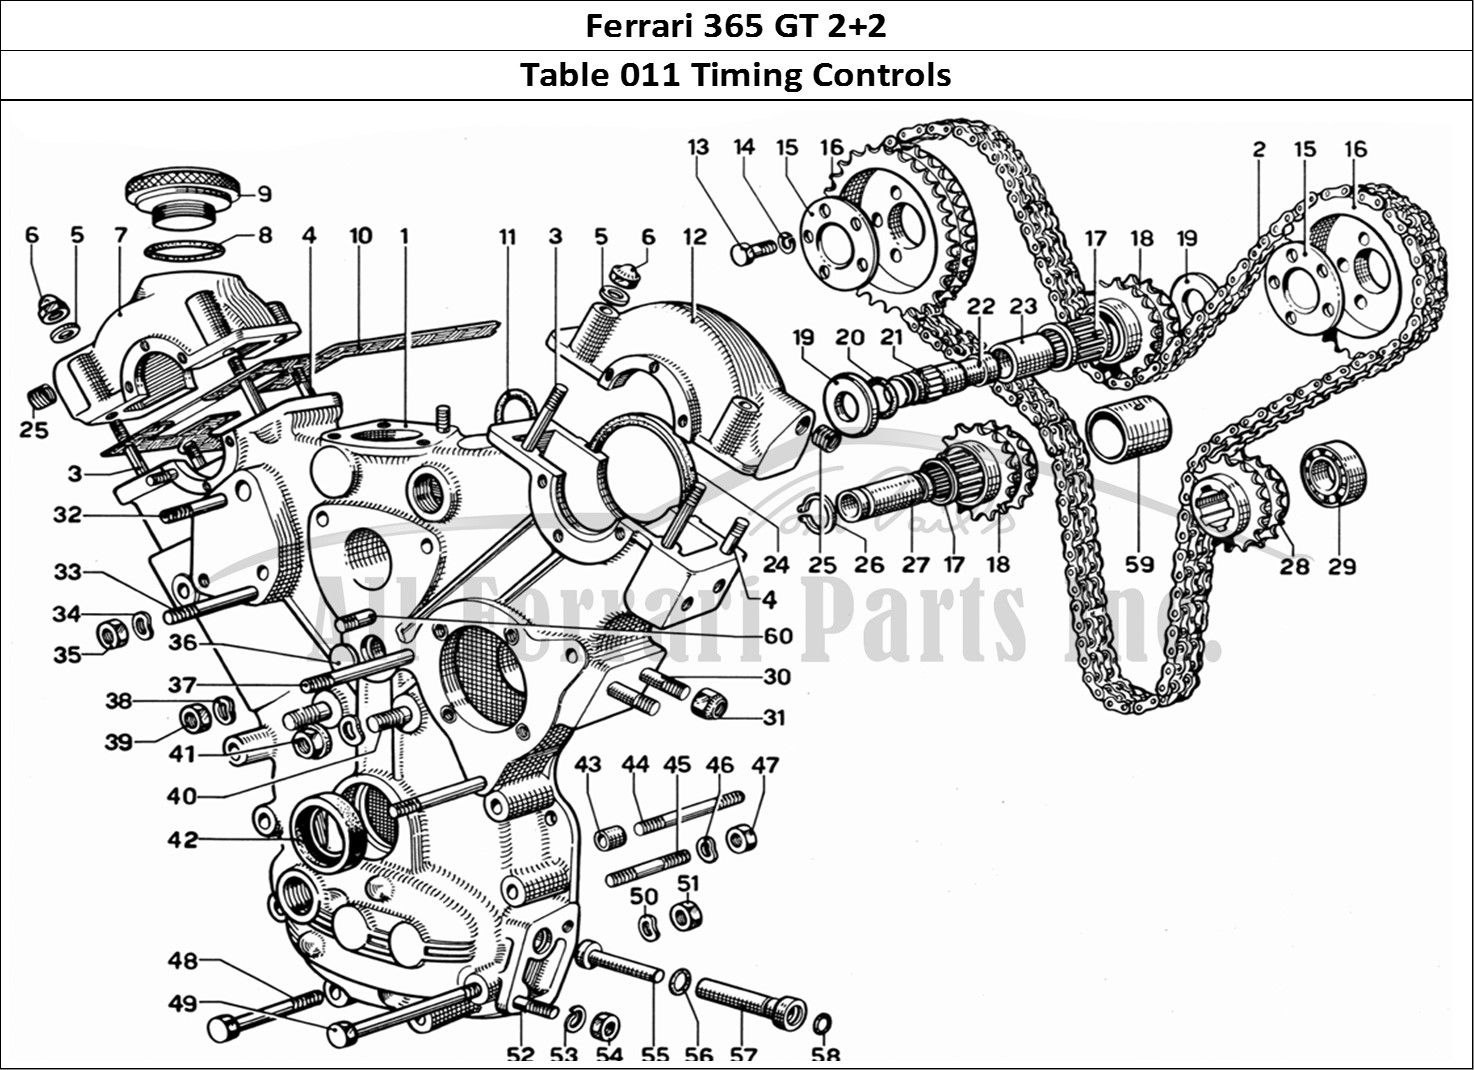 Ferrari Parts Ferrari 365 GT 2+2 (Mechanical) Page 011 Timing (Controls)